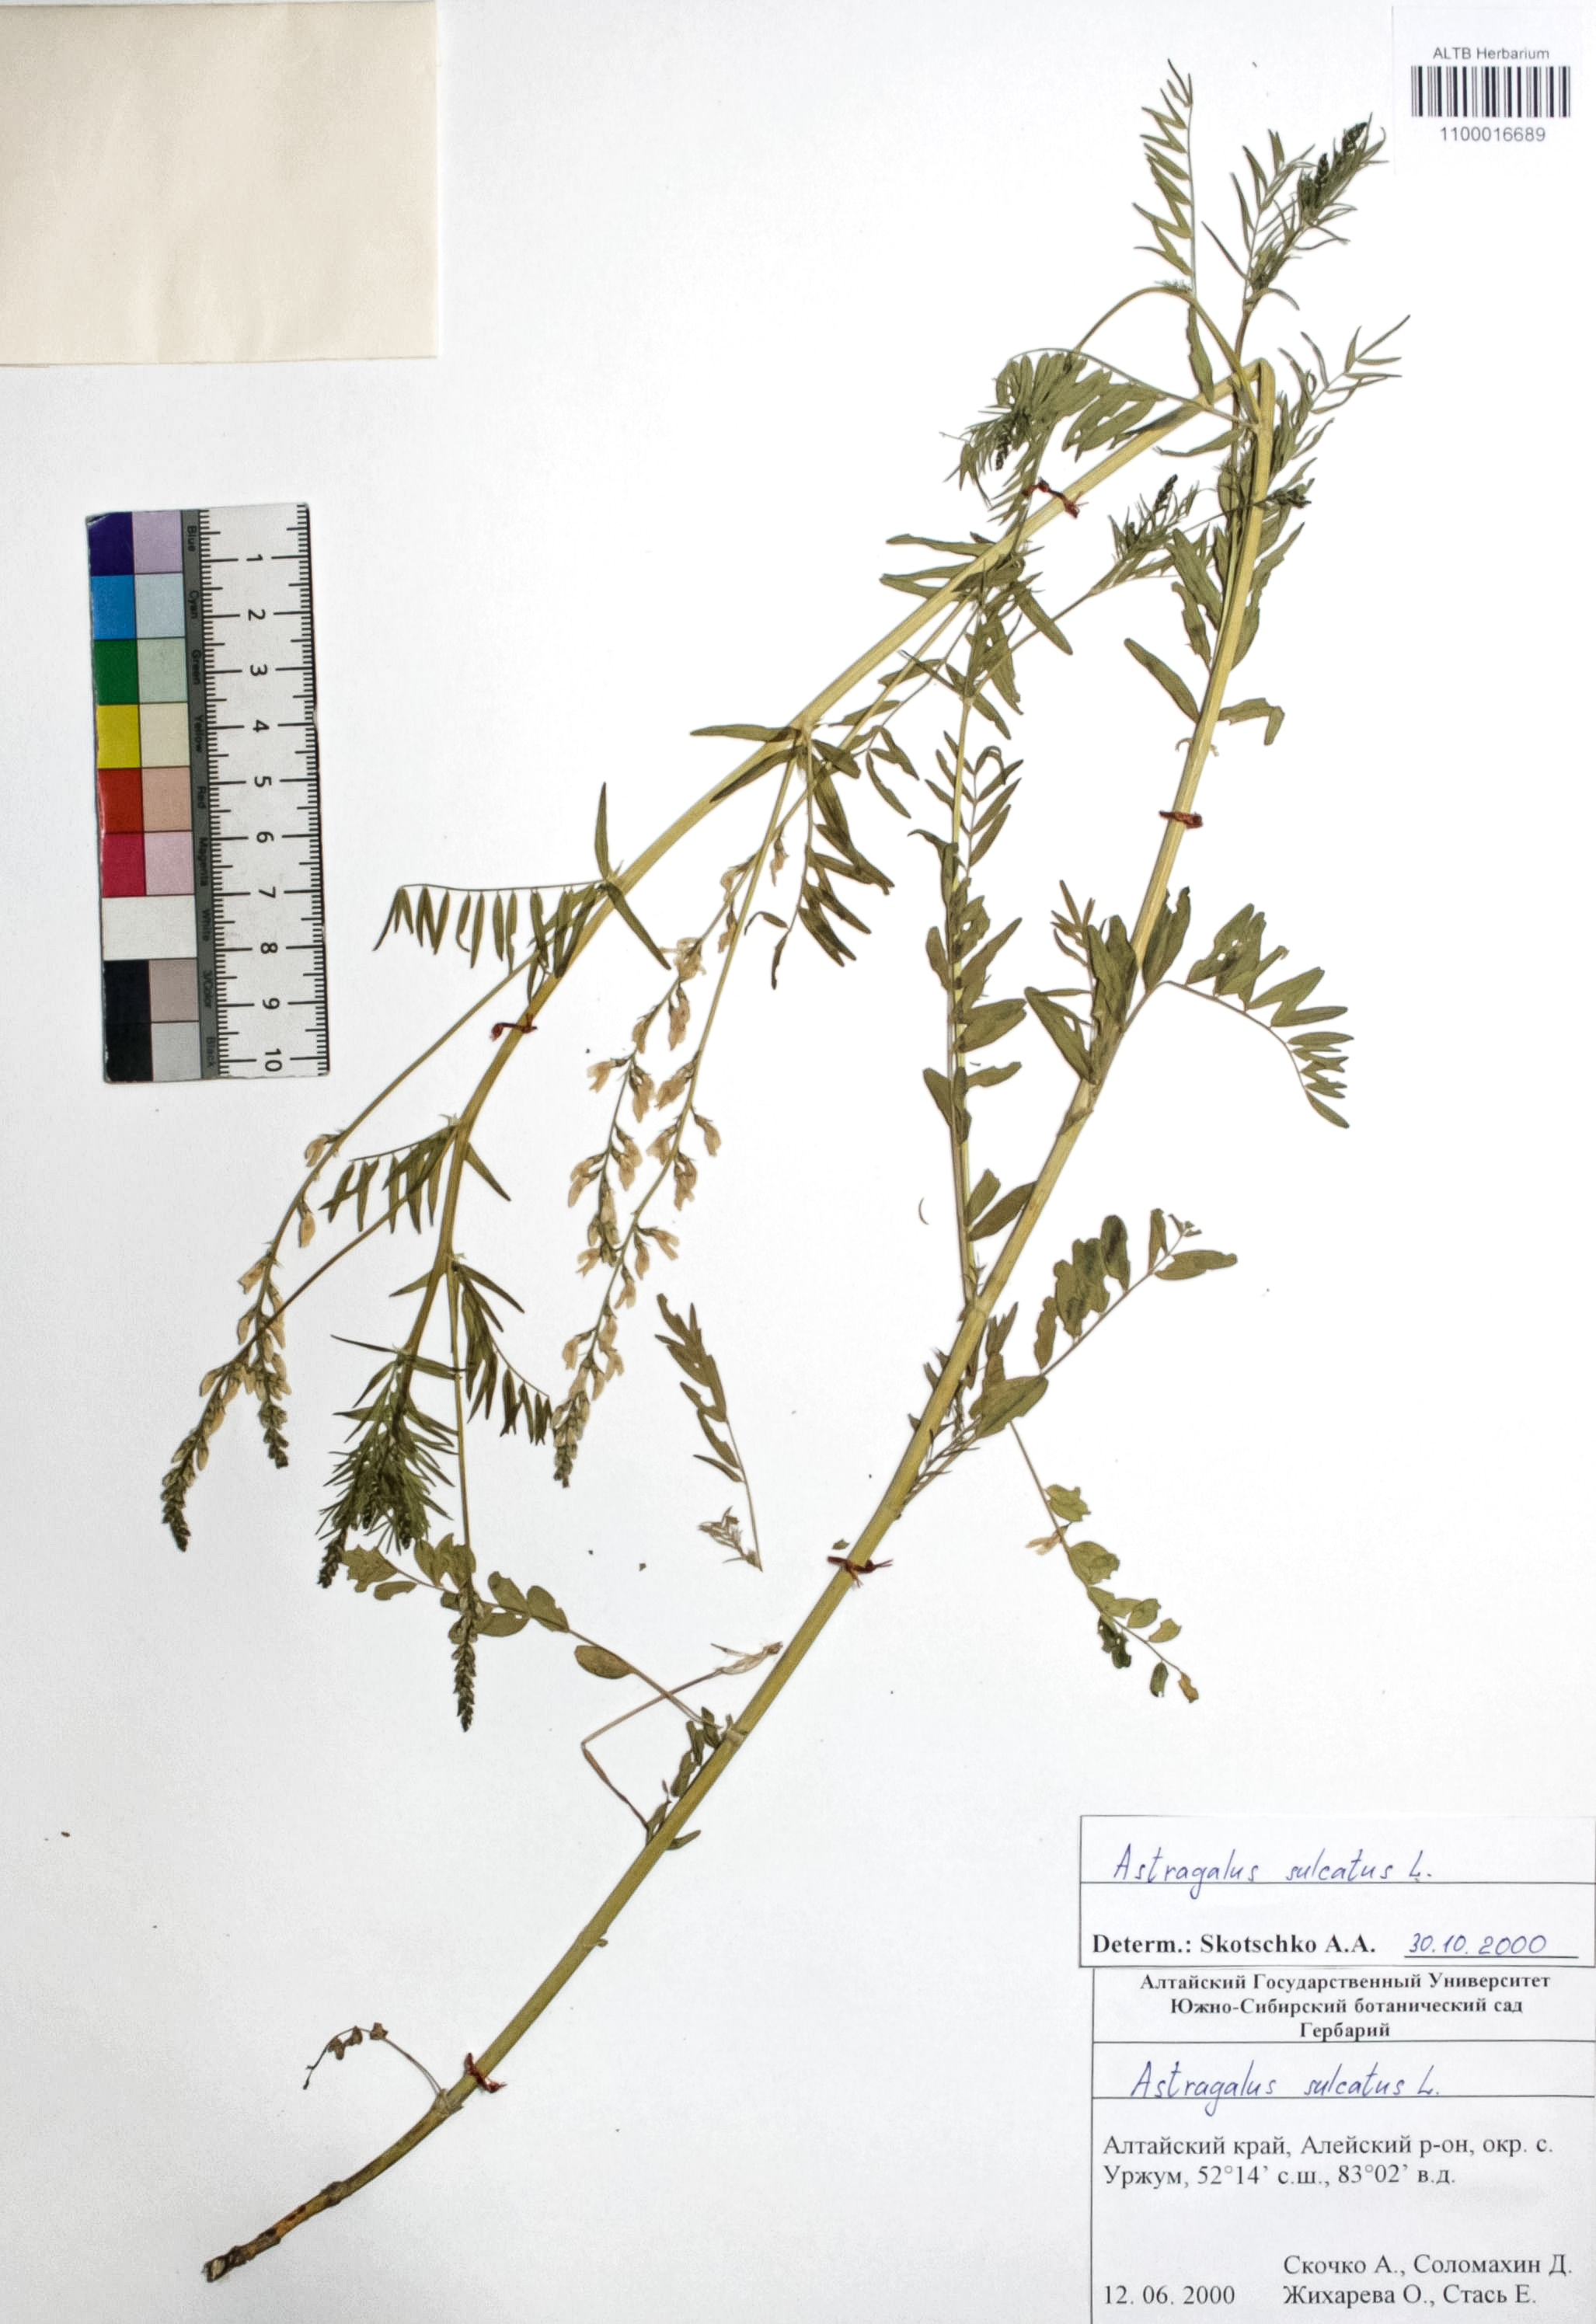 Astragalus sulcatus L.